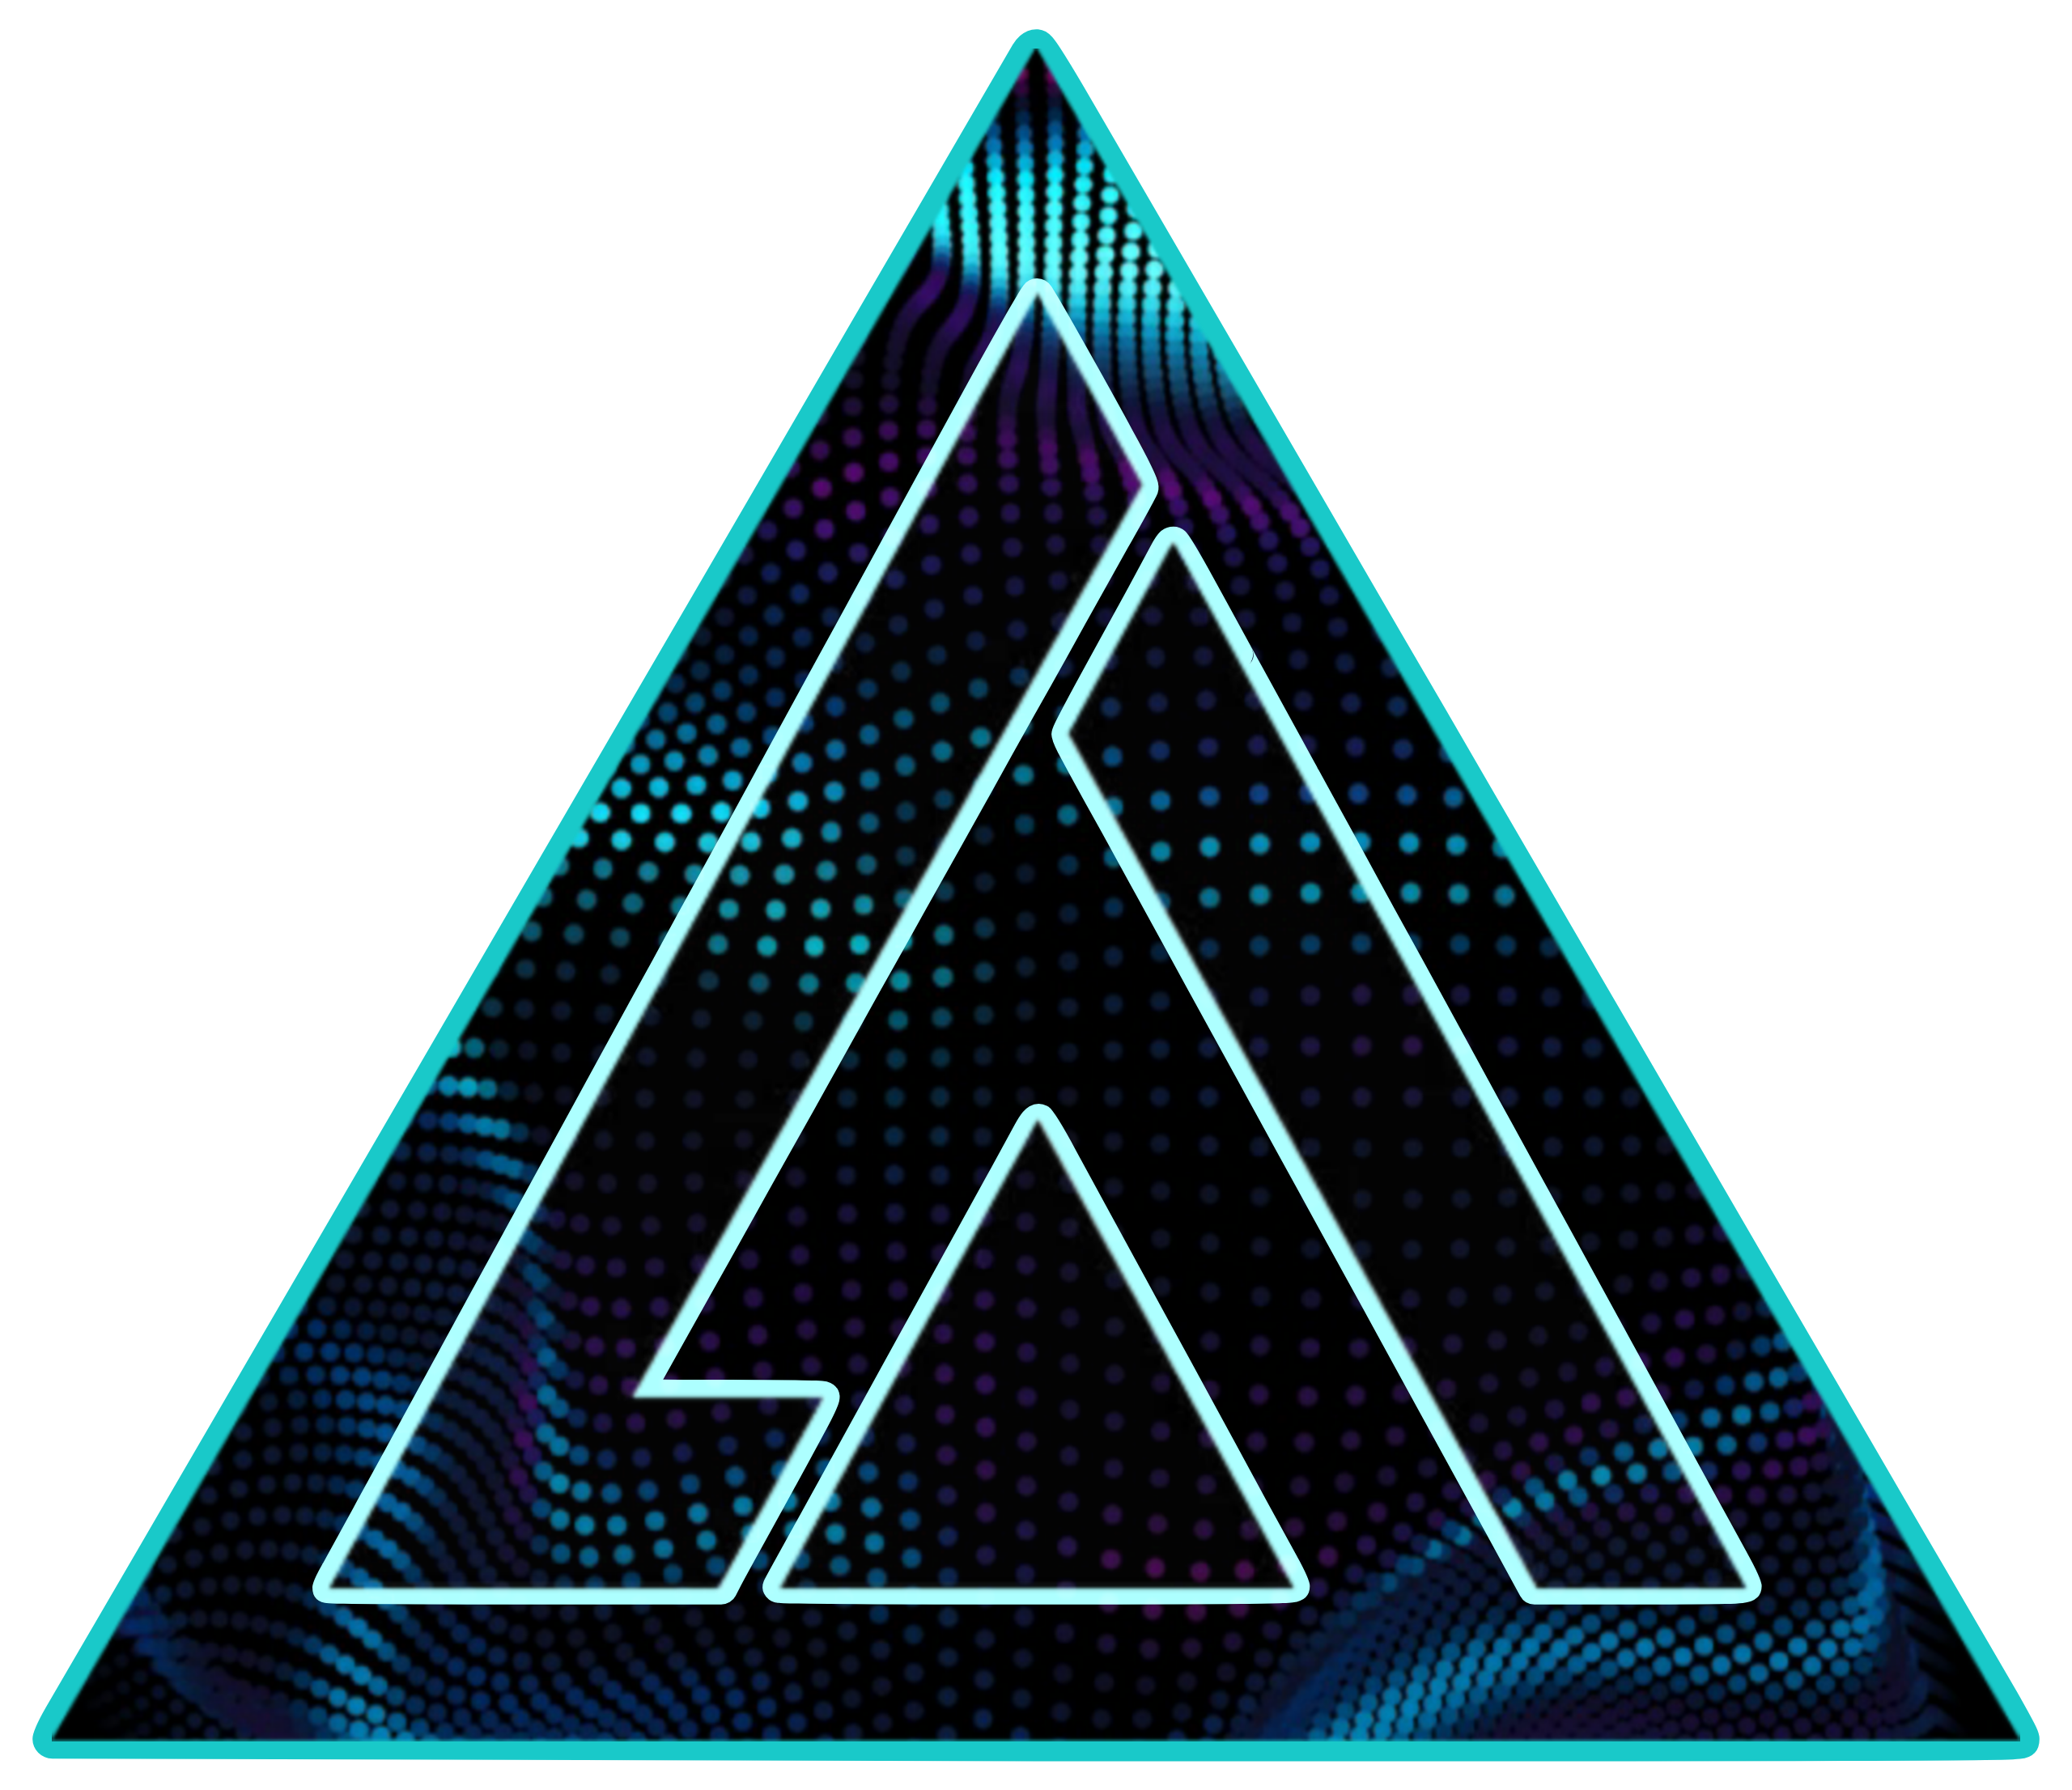 arthur logo